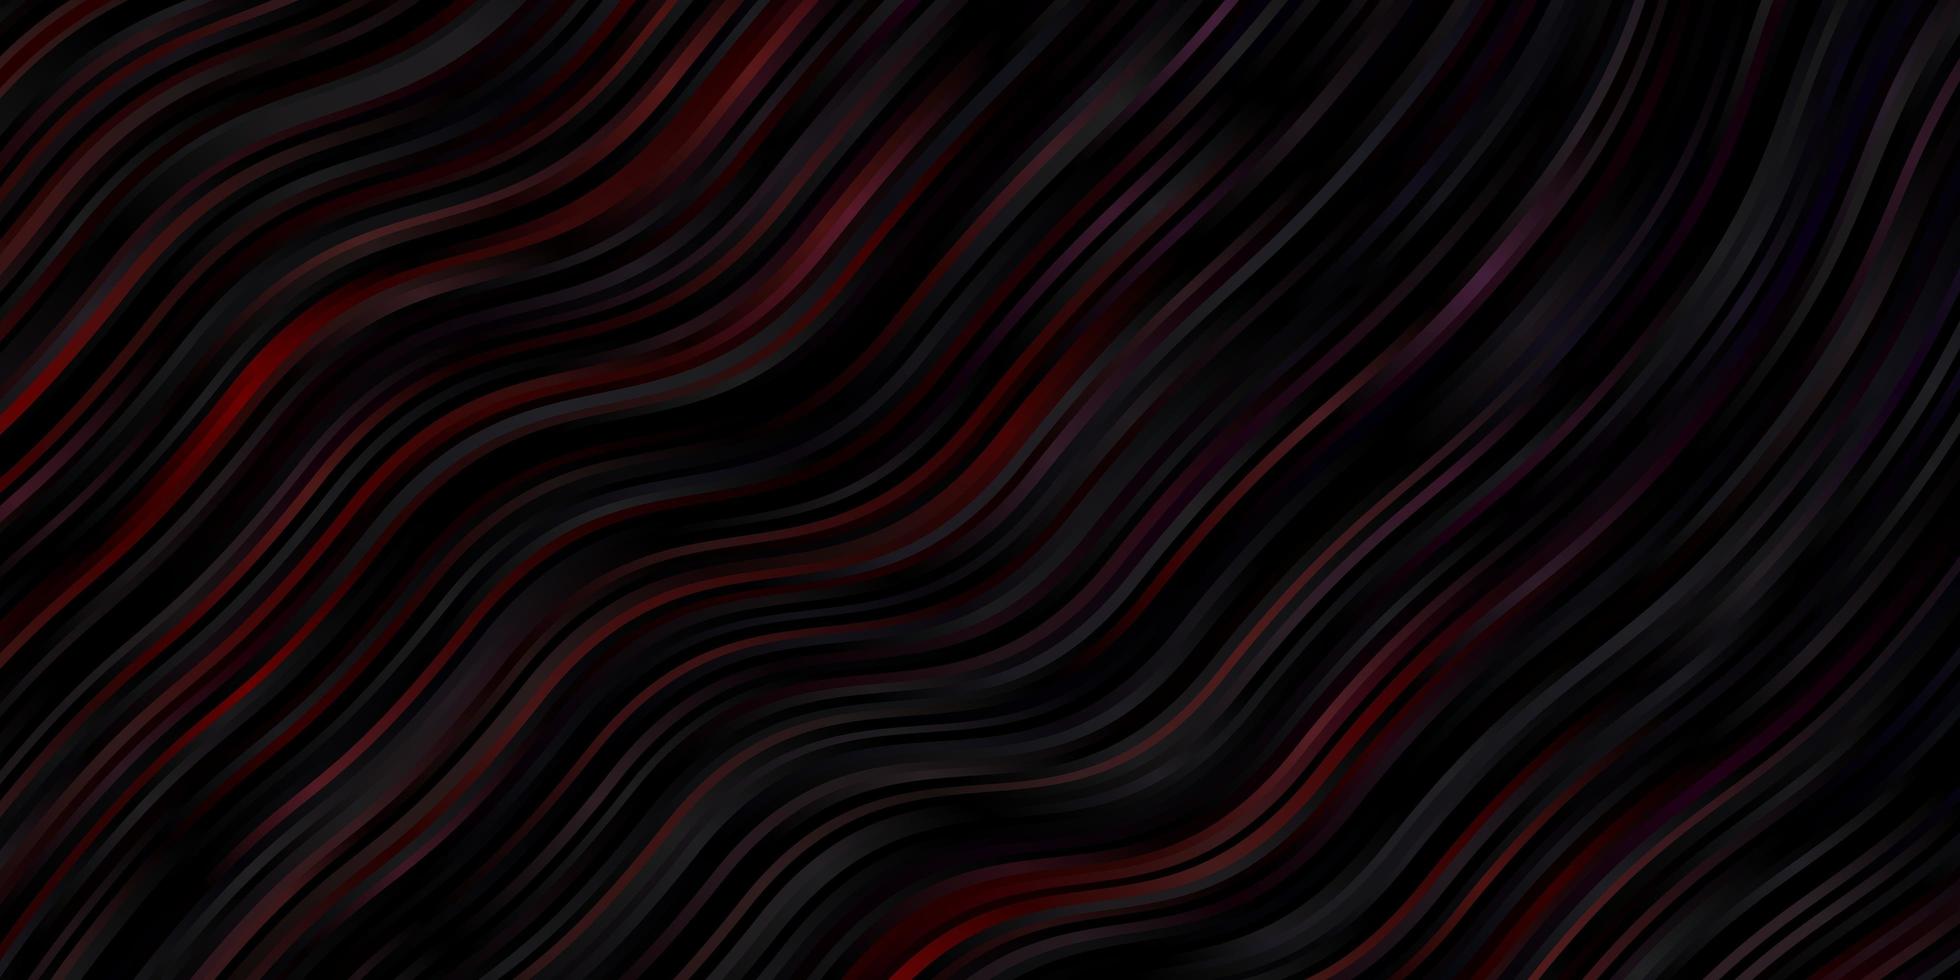 sfondo vettoriale rosso scuro con curve. illustrazione astratta sfumata con linee ironiche. modello per libretti, volantini.